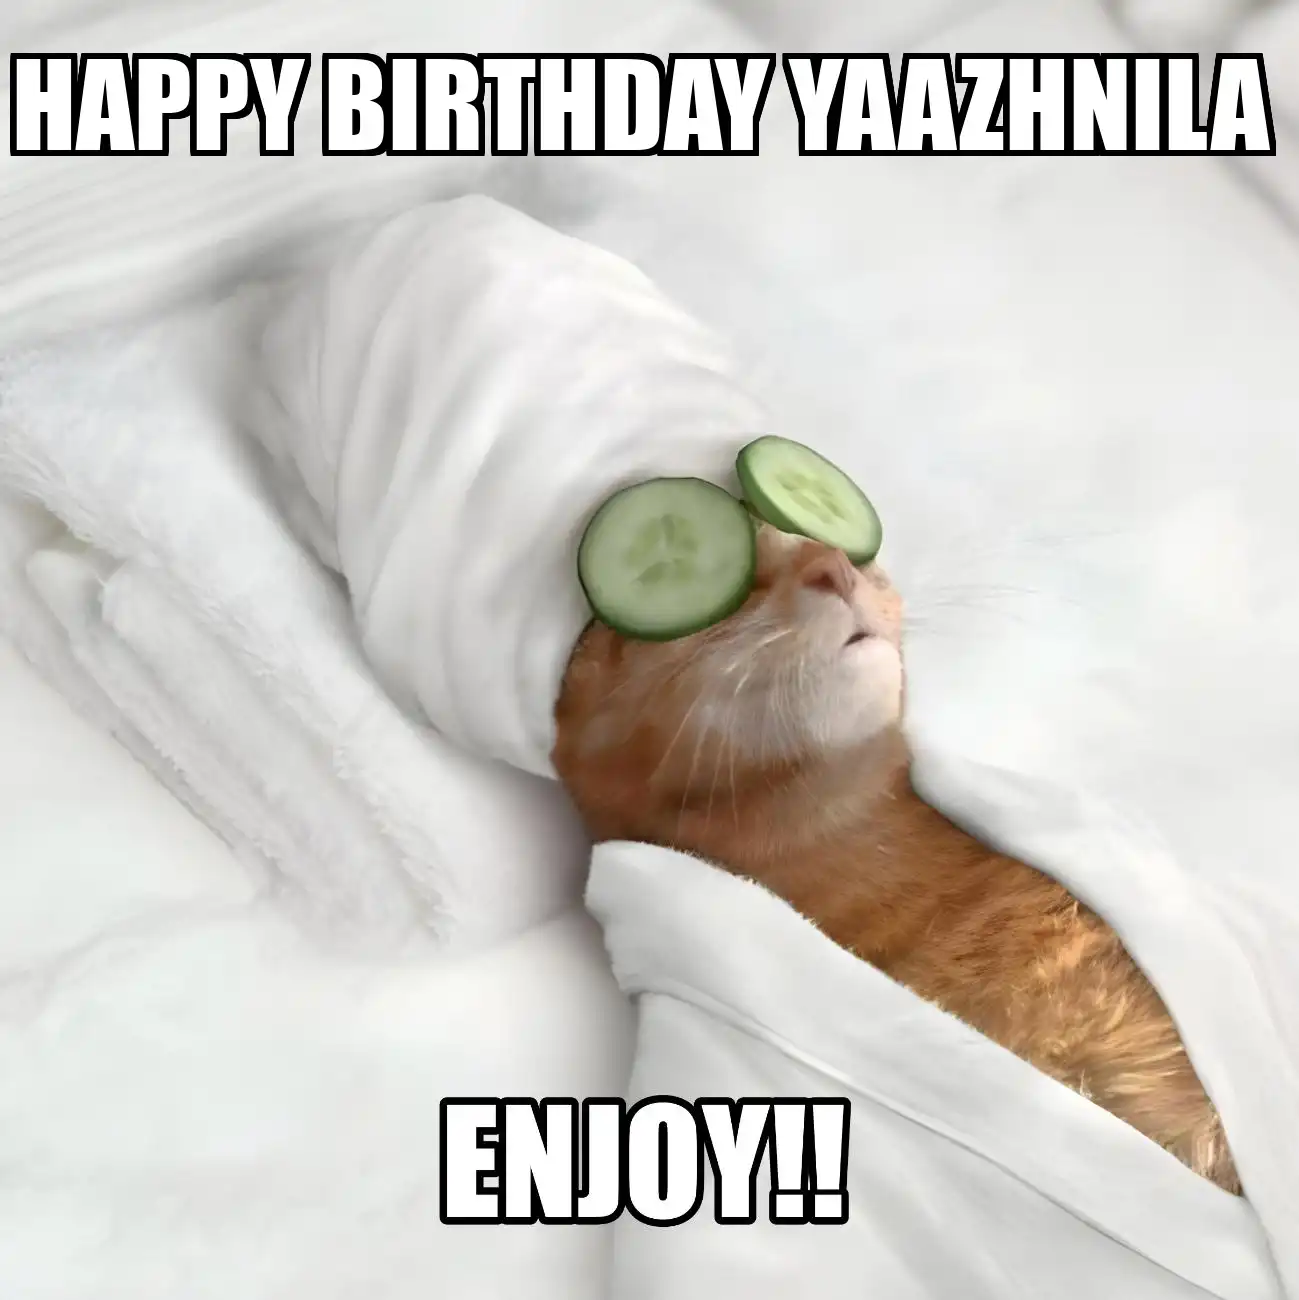 Happy Birthday Yaazhnila Enjoy Cat Meme